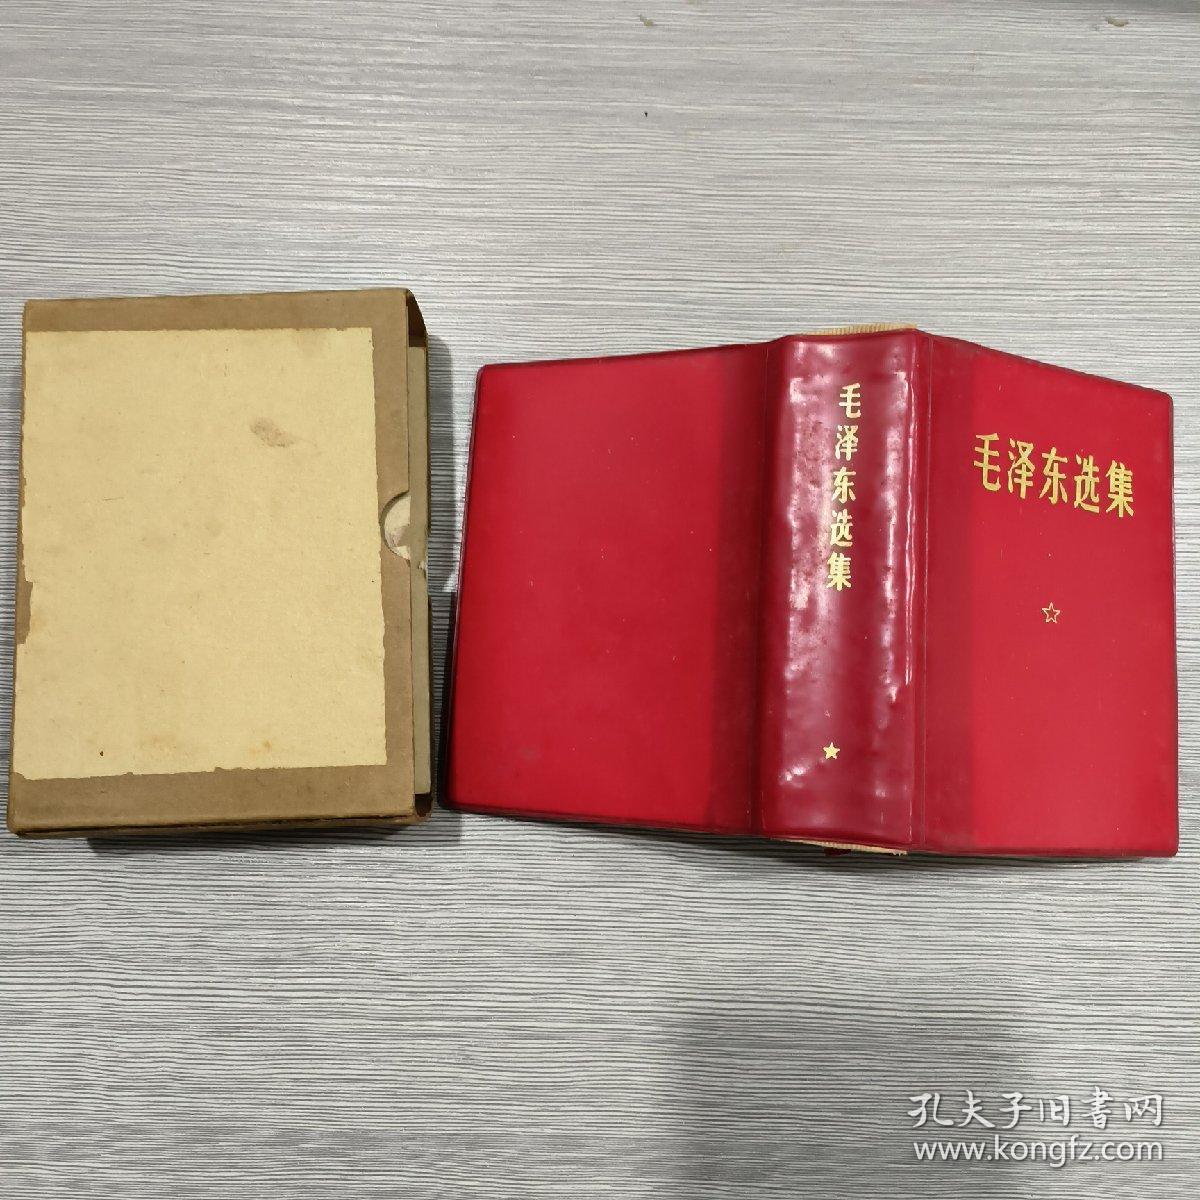 毛泽东选集(合订一卷本)64开软精装(69年印)有盒套